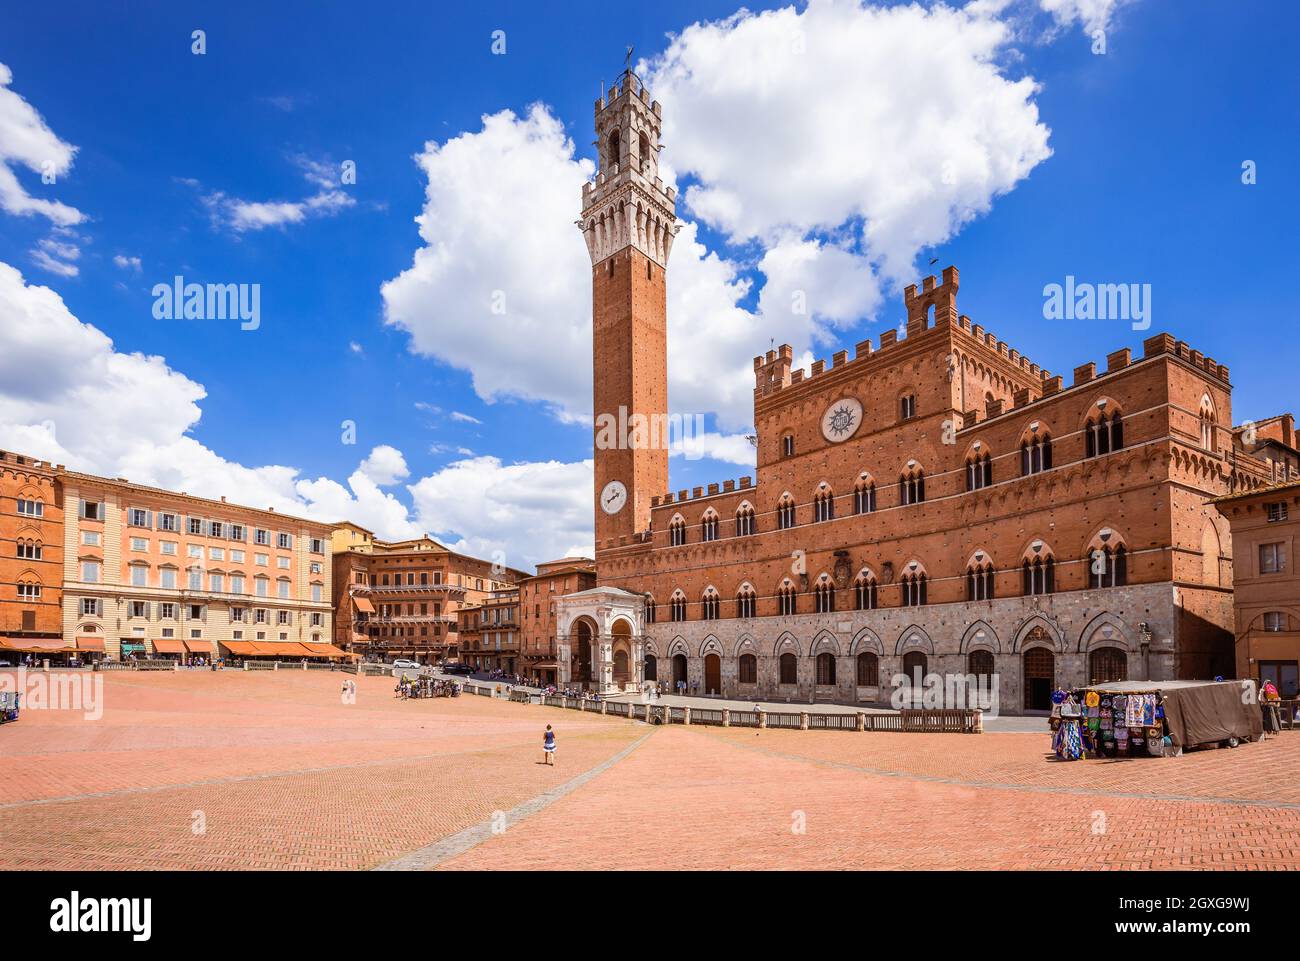 Siena, Italia. Piazza del Campo con Palazzo Pubblico y Torre del Mangia. Foto de stock